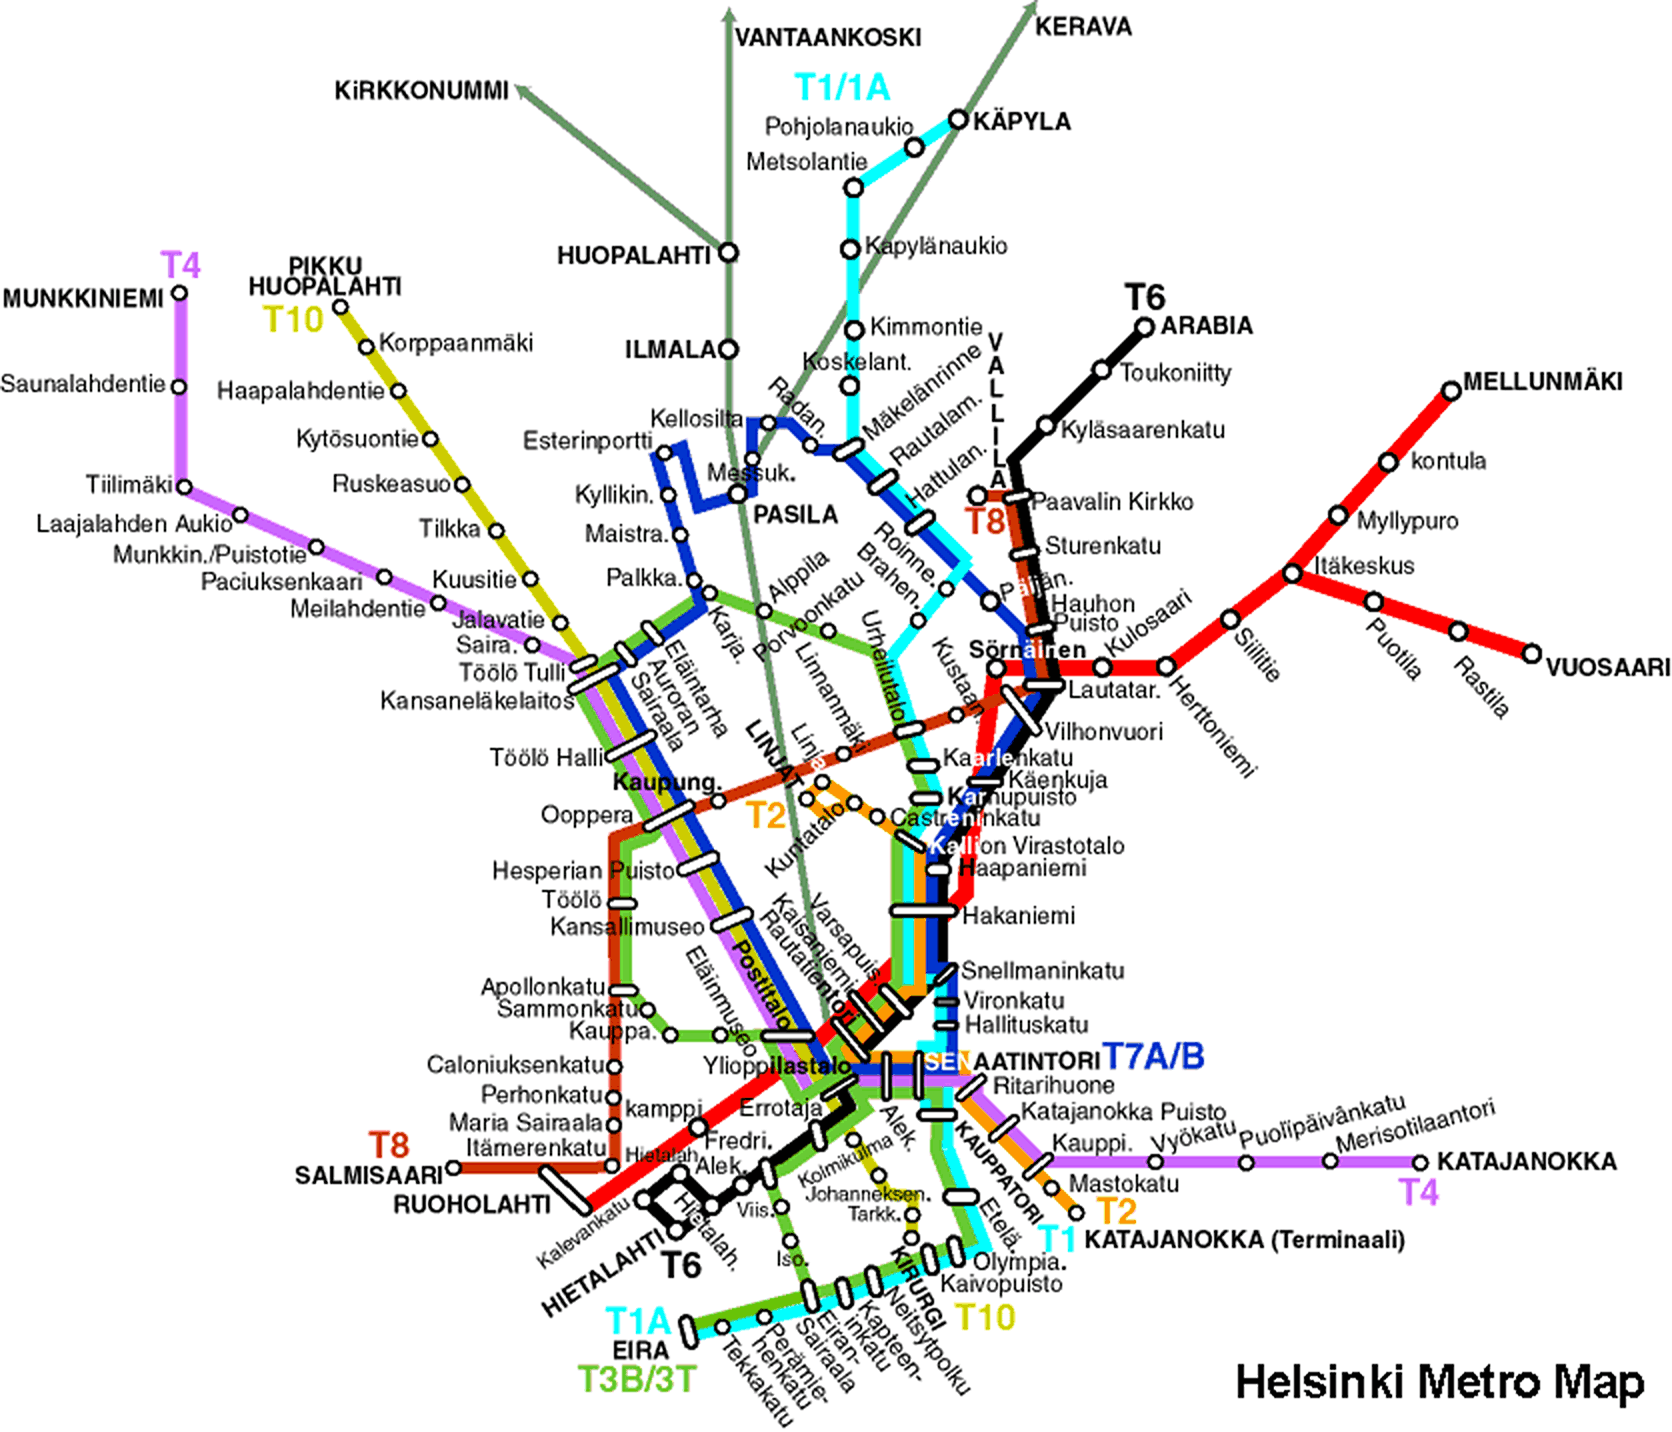 Map meter of Helsinki